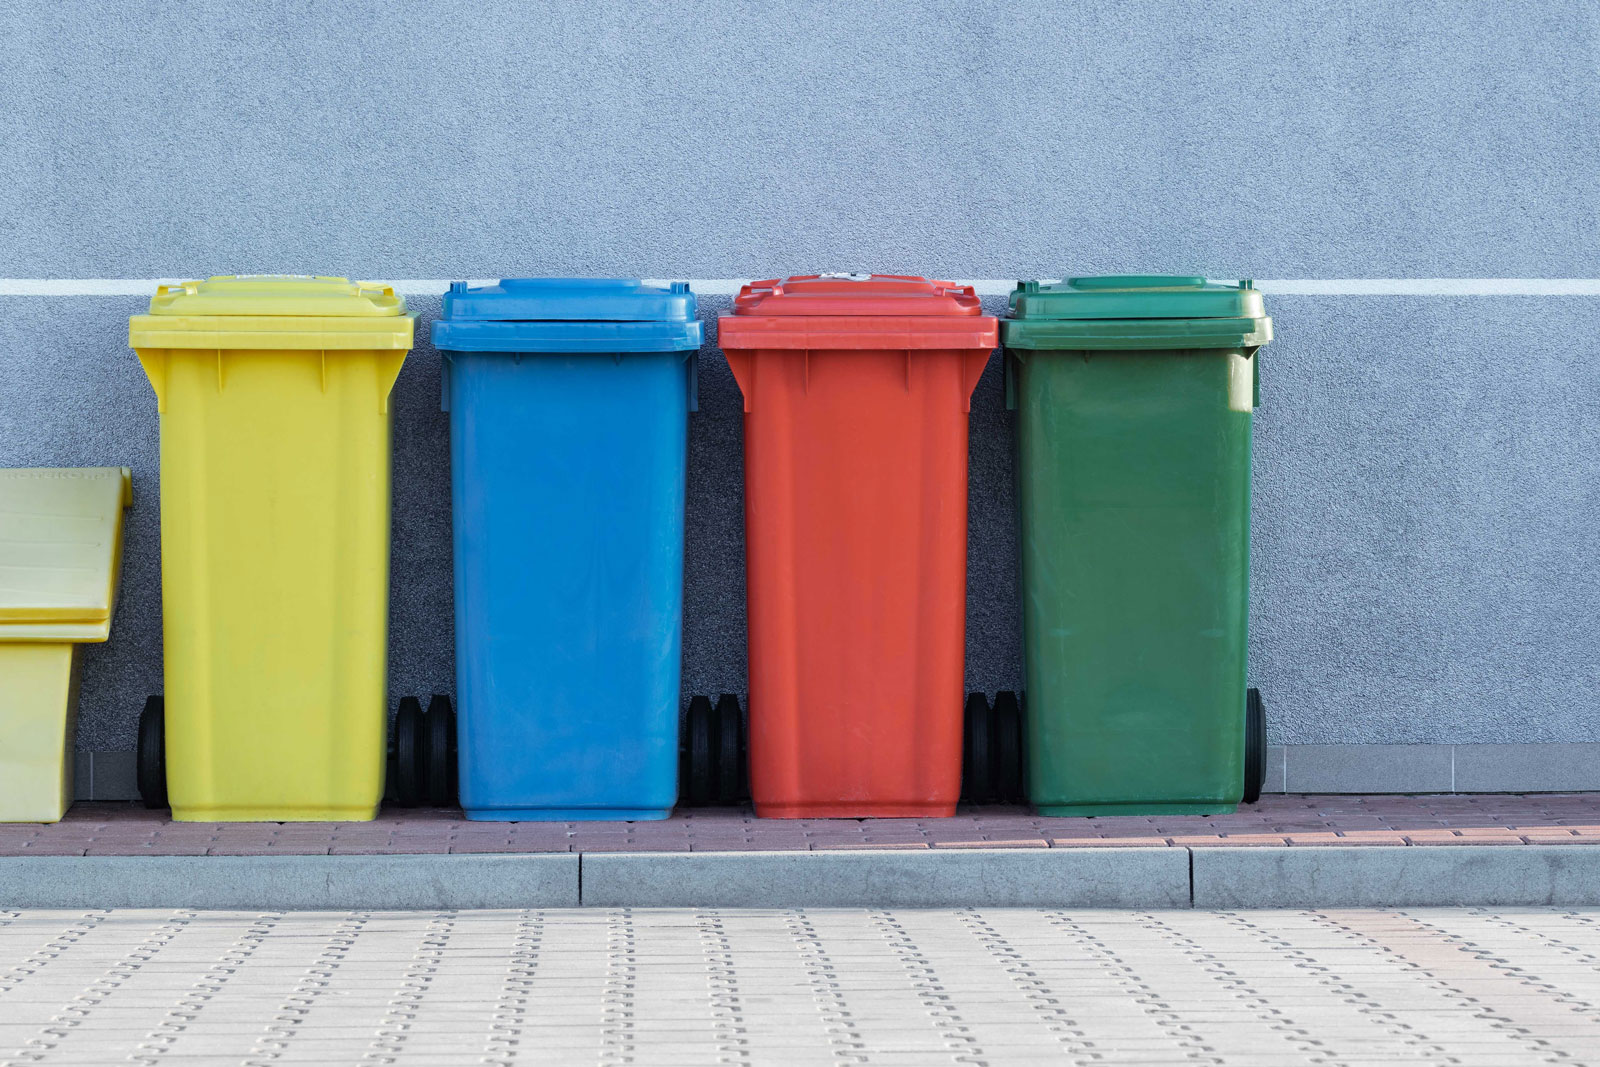 Cubos reciclaje economia circular empleo